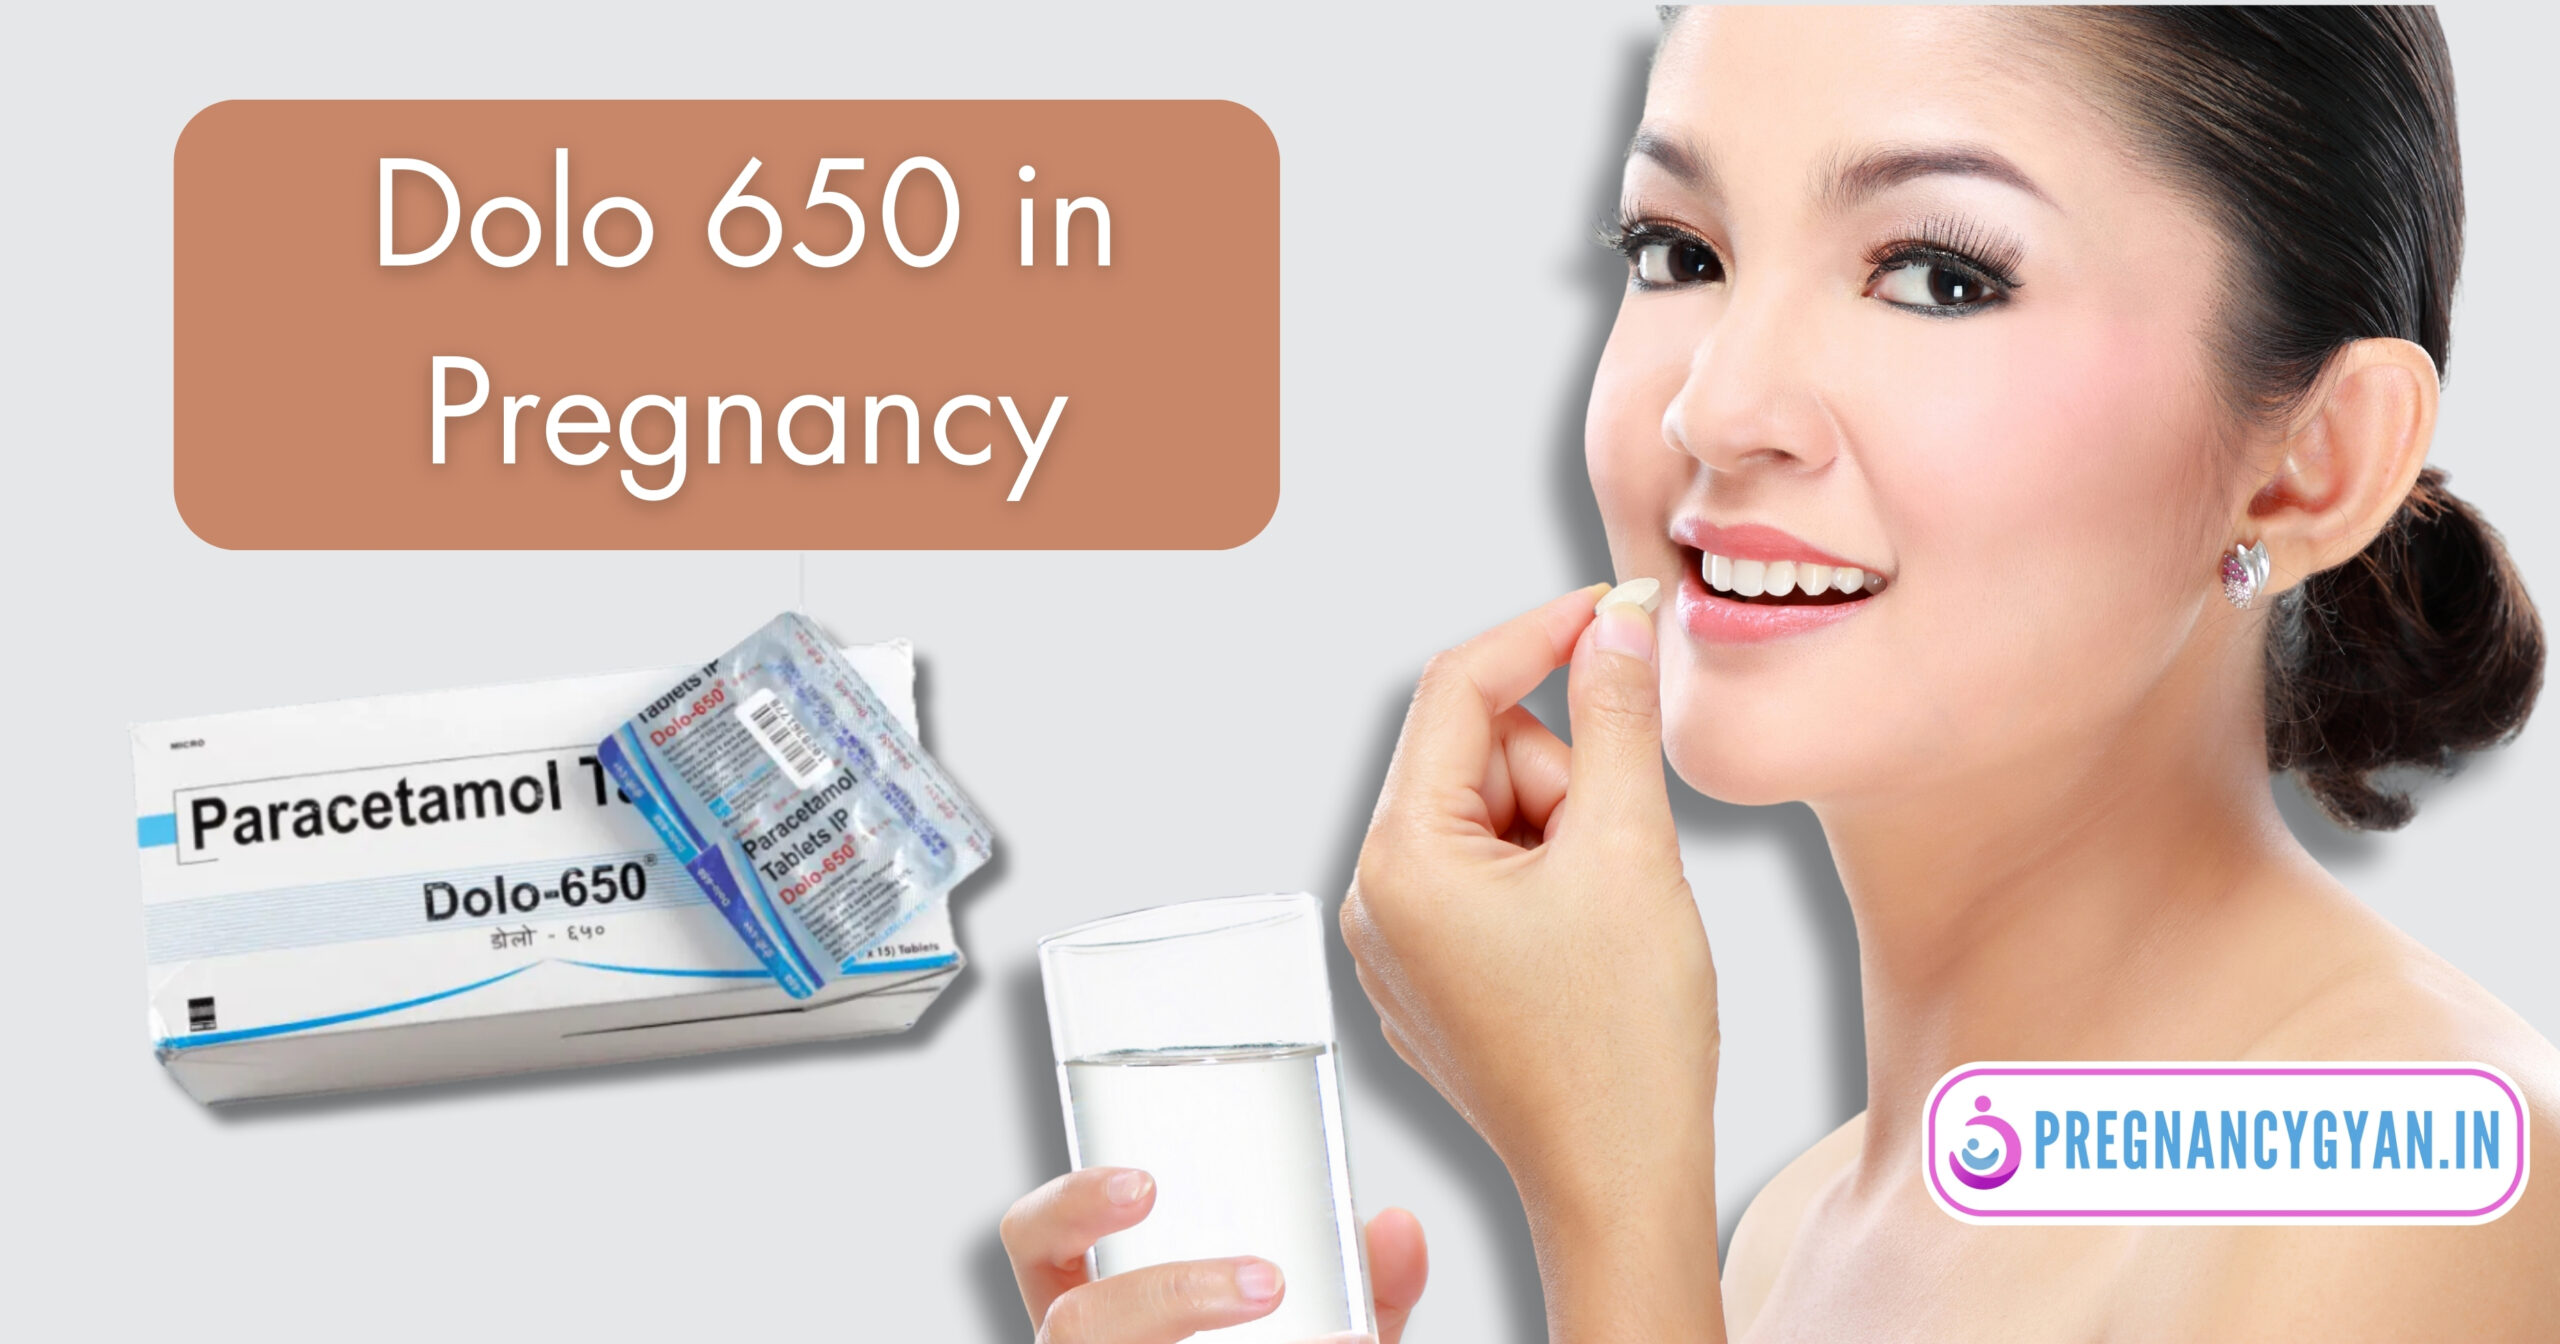 Dolo 650 in Pregnancy